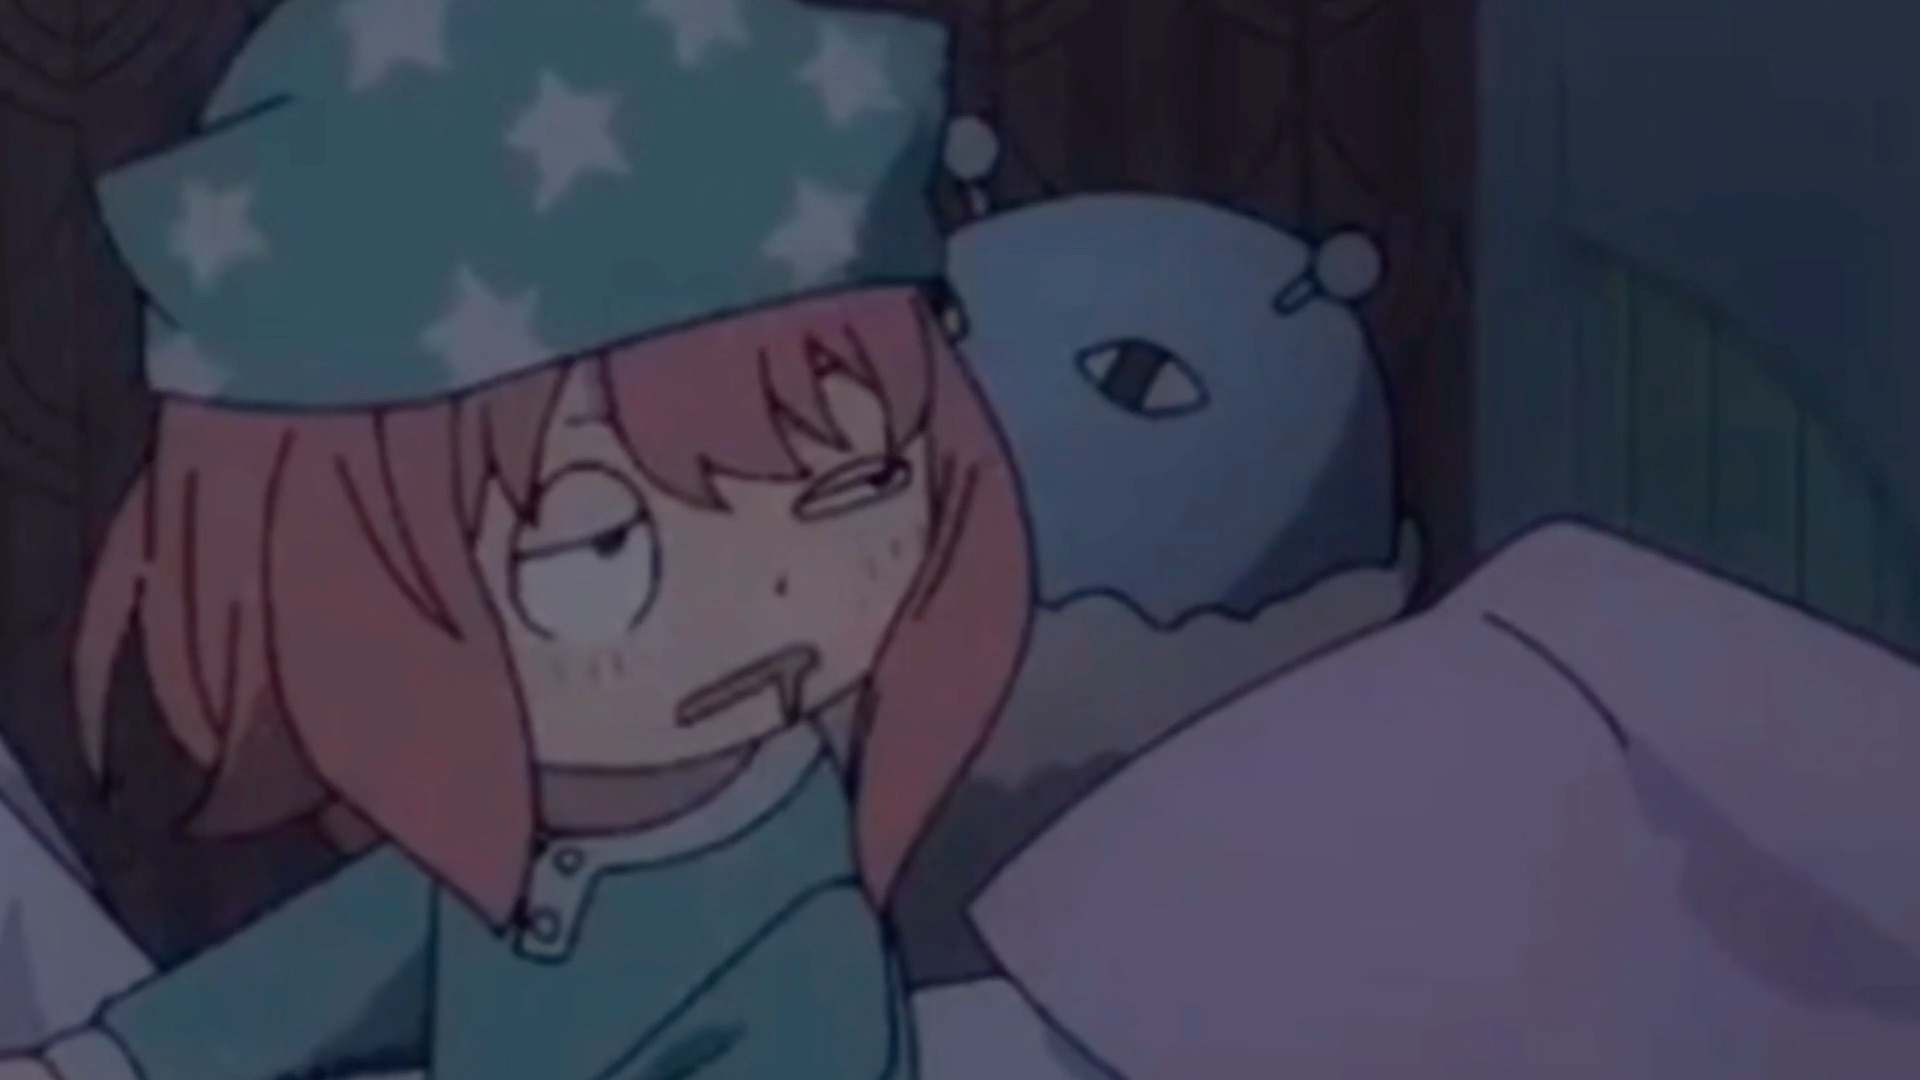 Sleepyface sleepy and bunny anime 603361 on animeshercom